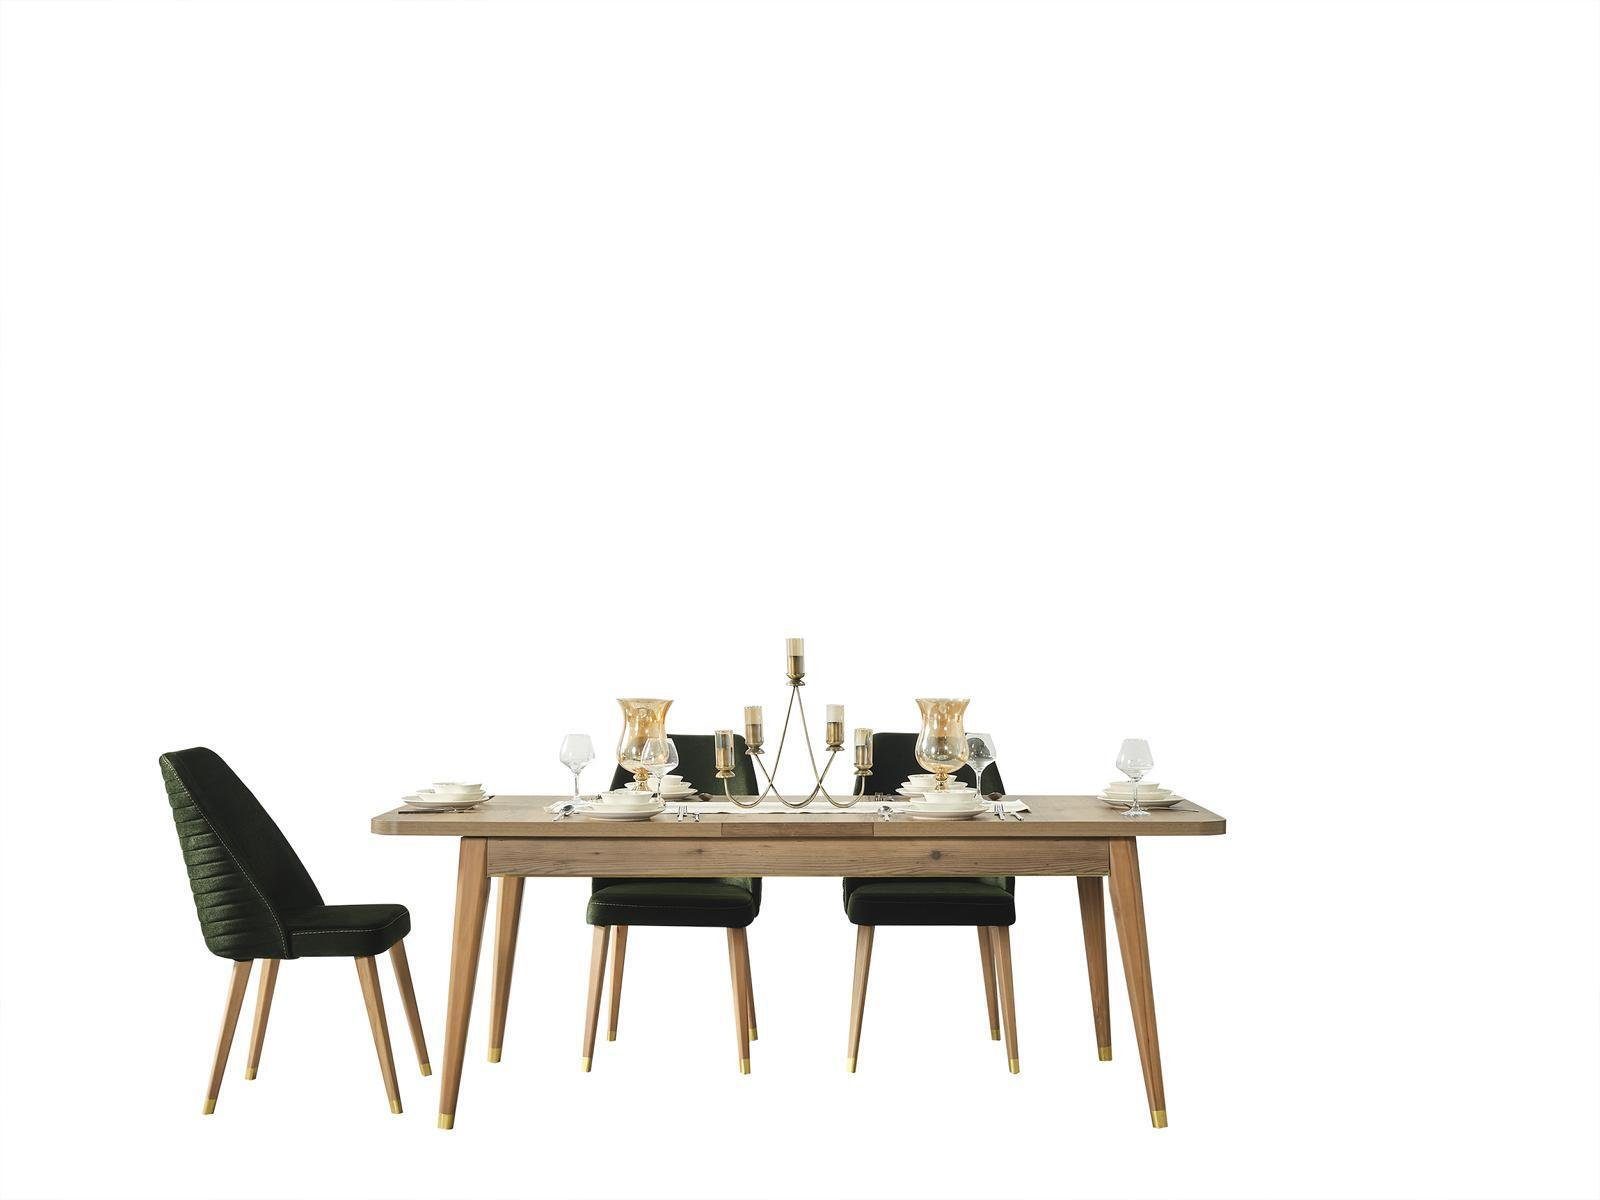 Holz, Esstisch Esstisch Made JVmoebel Europa in Esszimmer Wohnzimmer Tisch Garnitur Gruppe